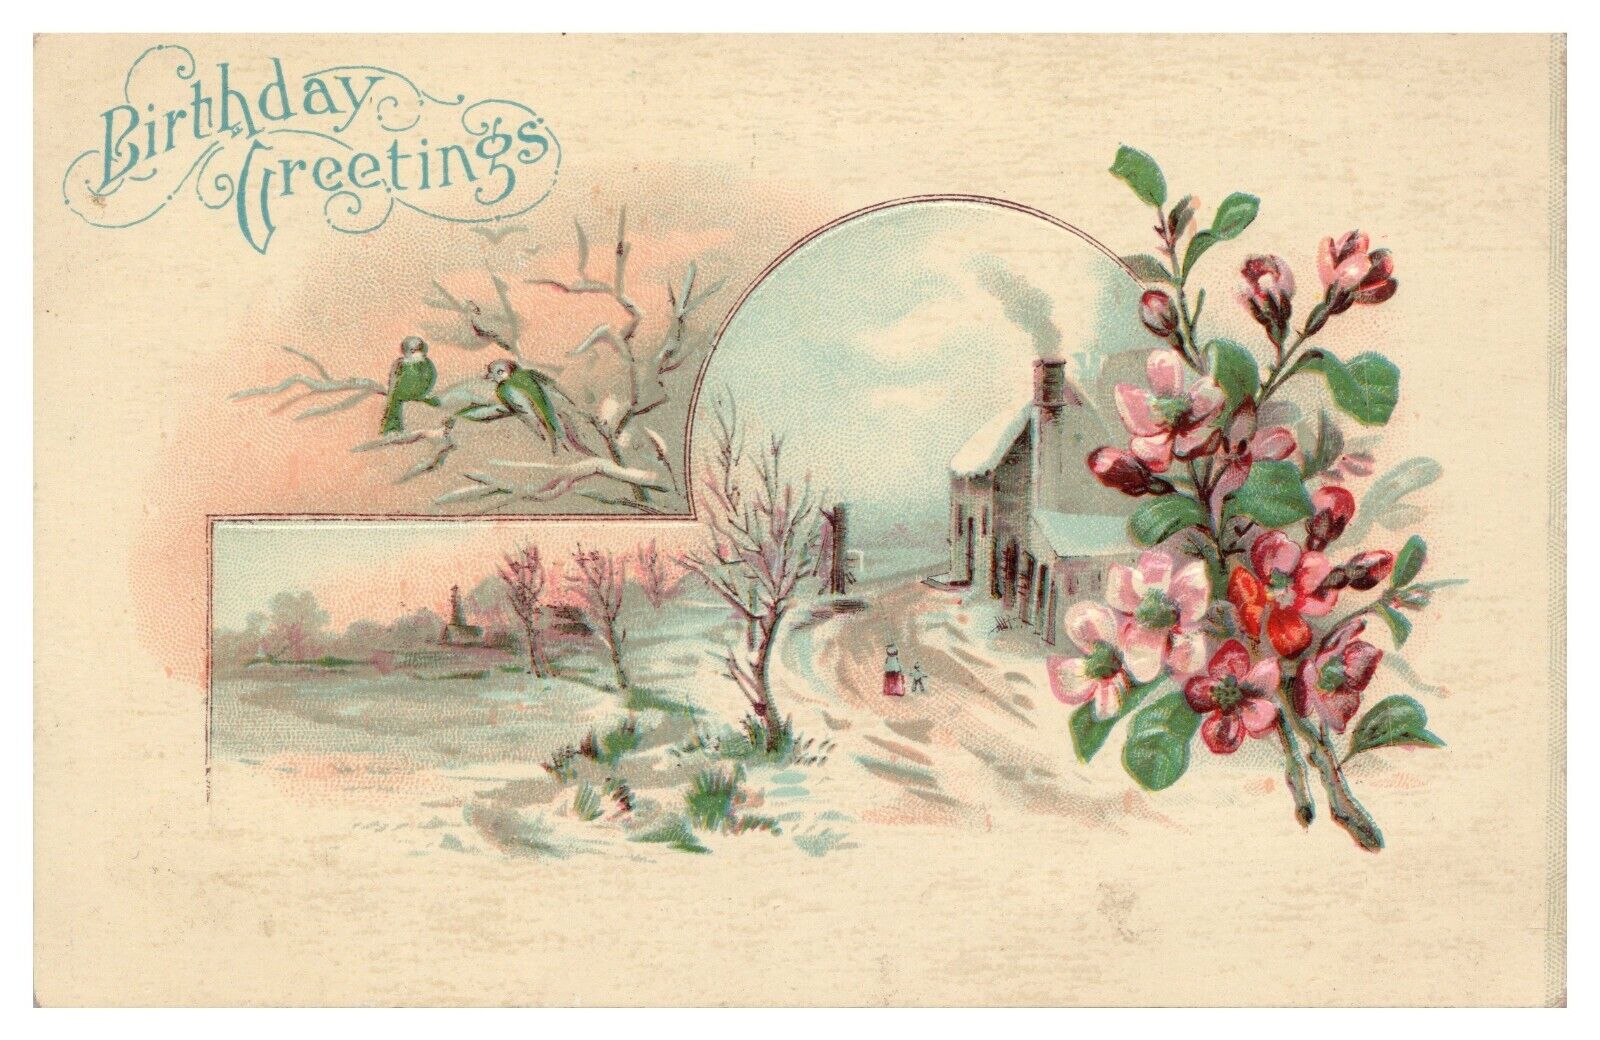 Vintage Embossed Birthday Greetings Postcard c1909 Snowy Outdoor Scene Flowers